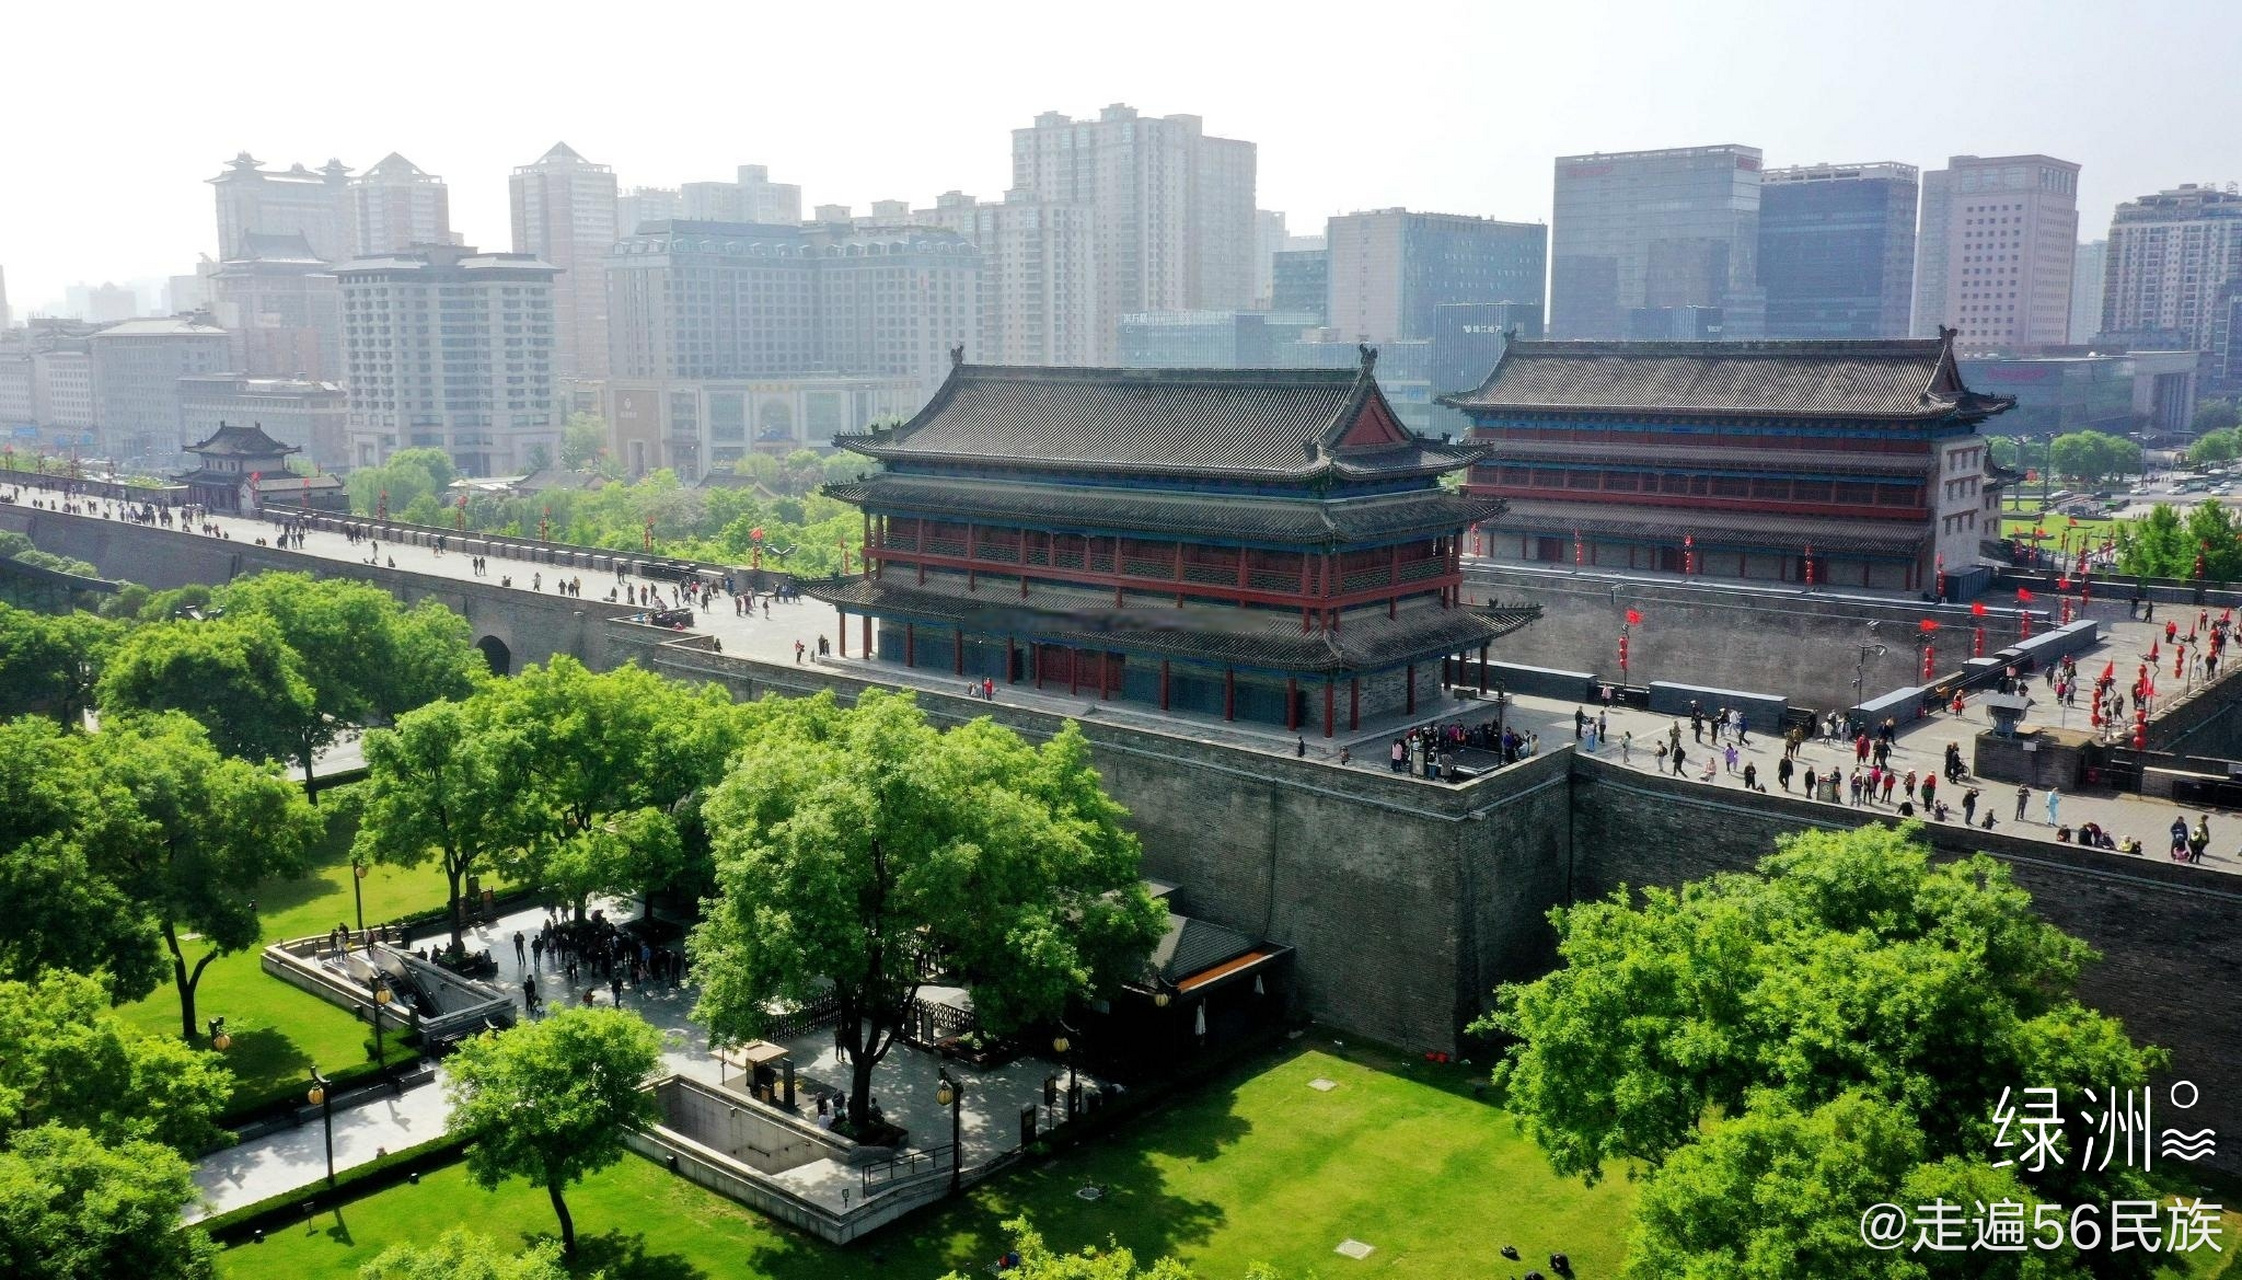 西安明城墙,中国保存最完整的明清城垣 